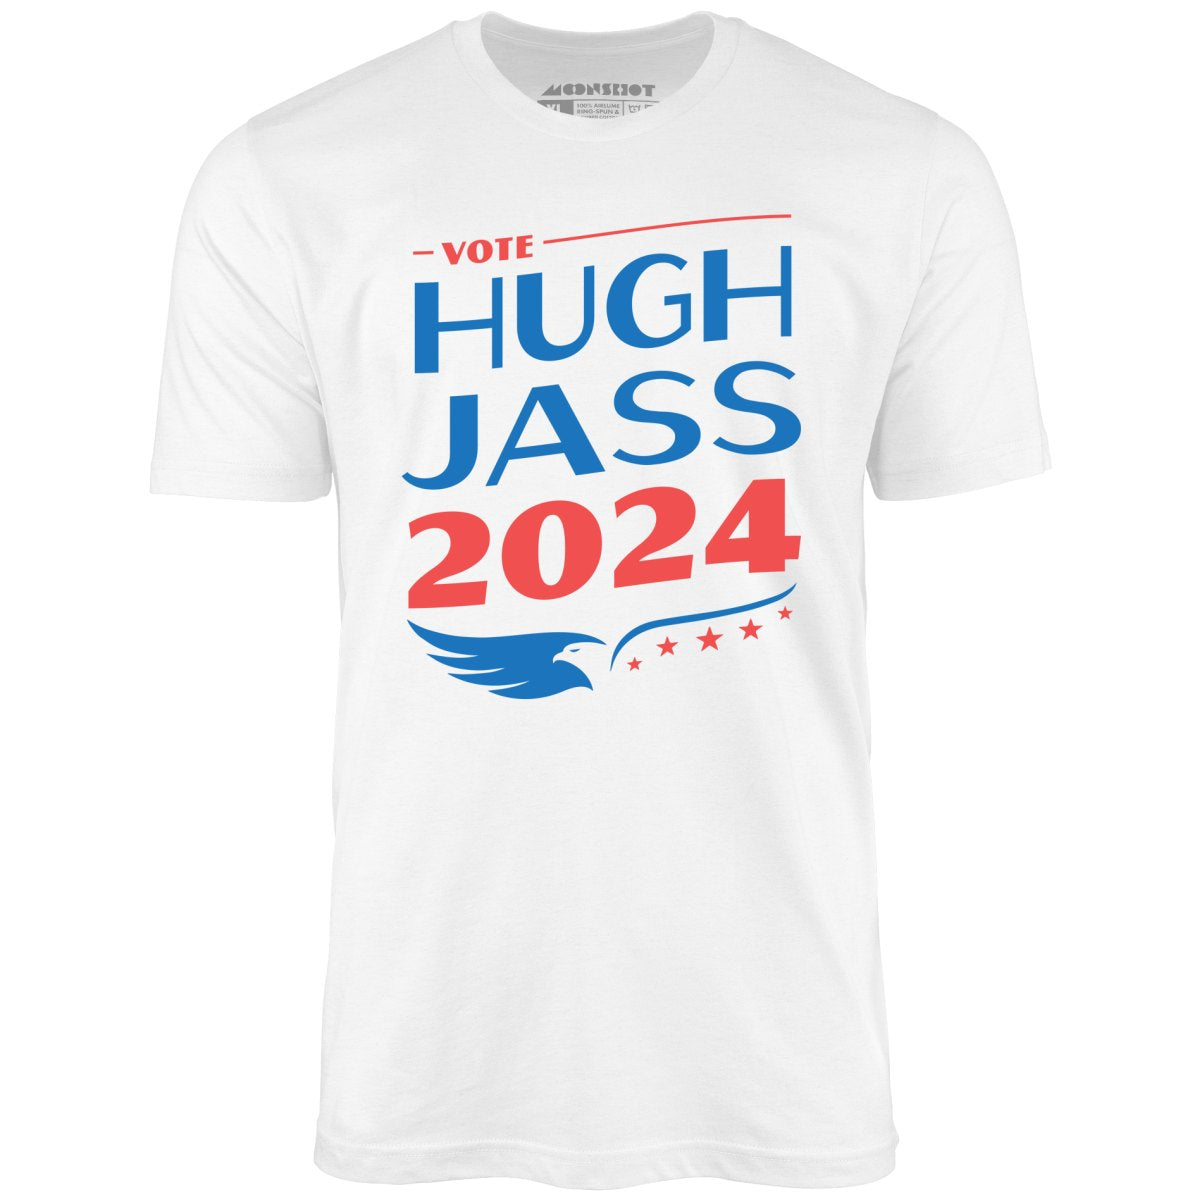 Hugh Jass 2024 - Unisex T-Shirt